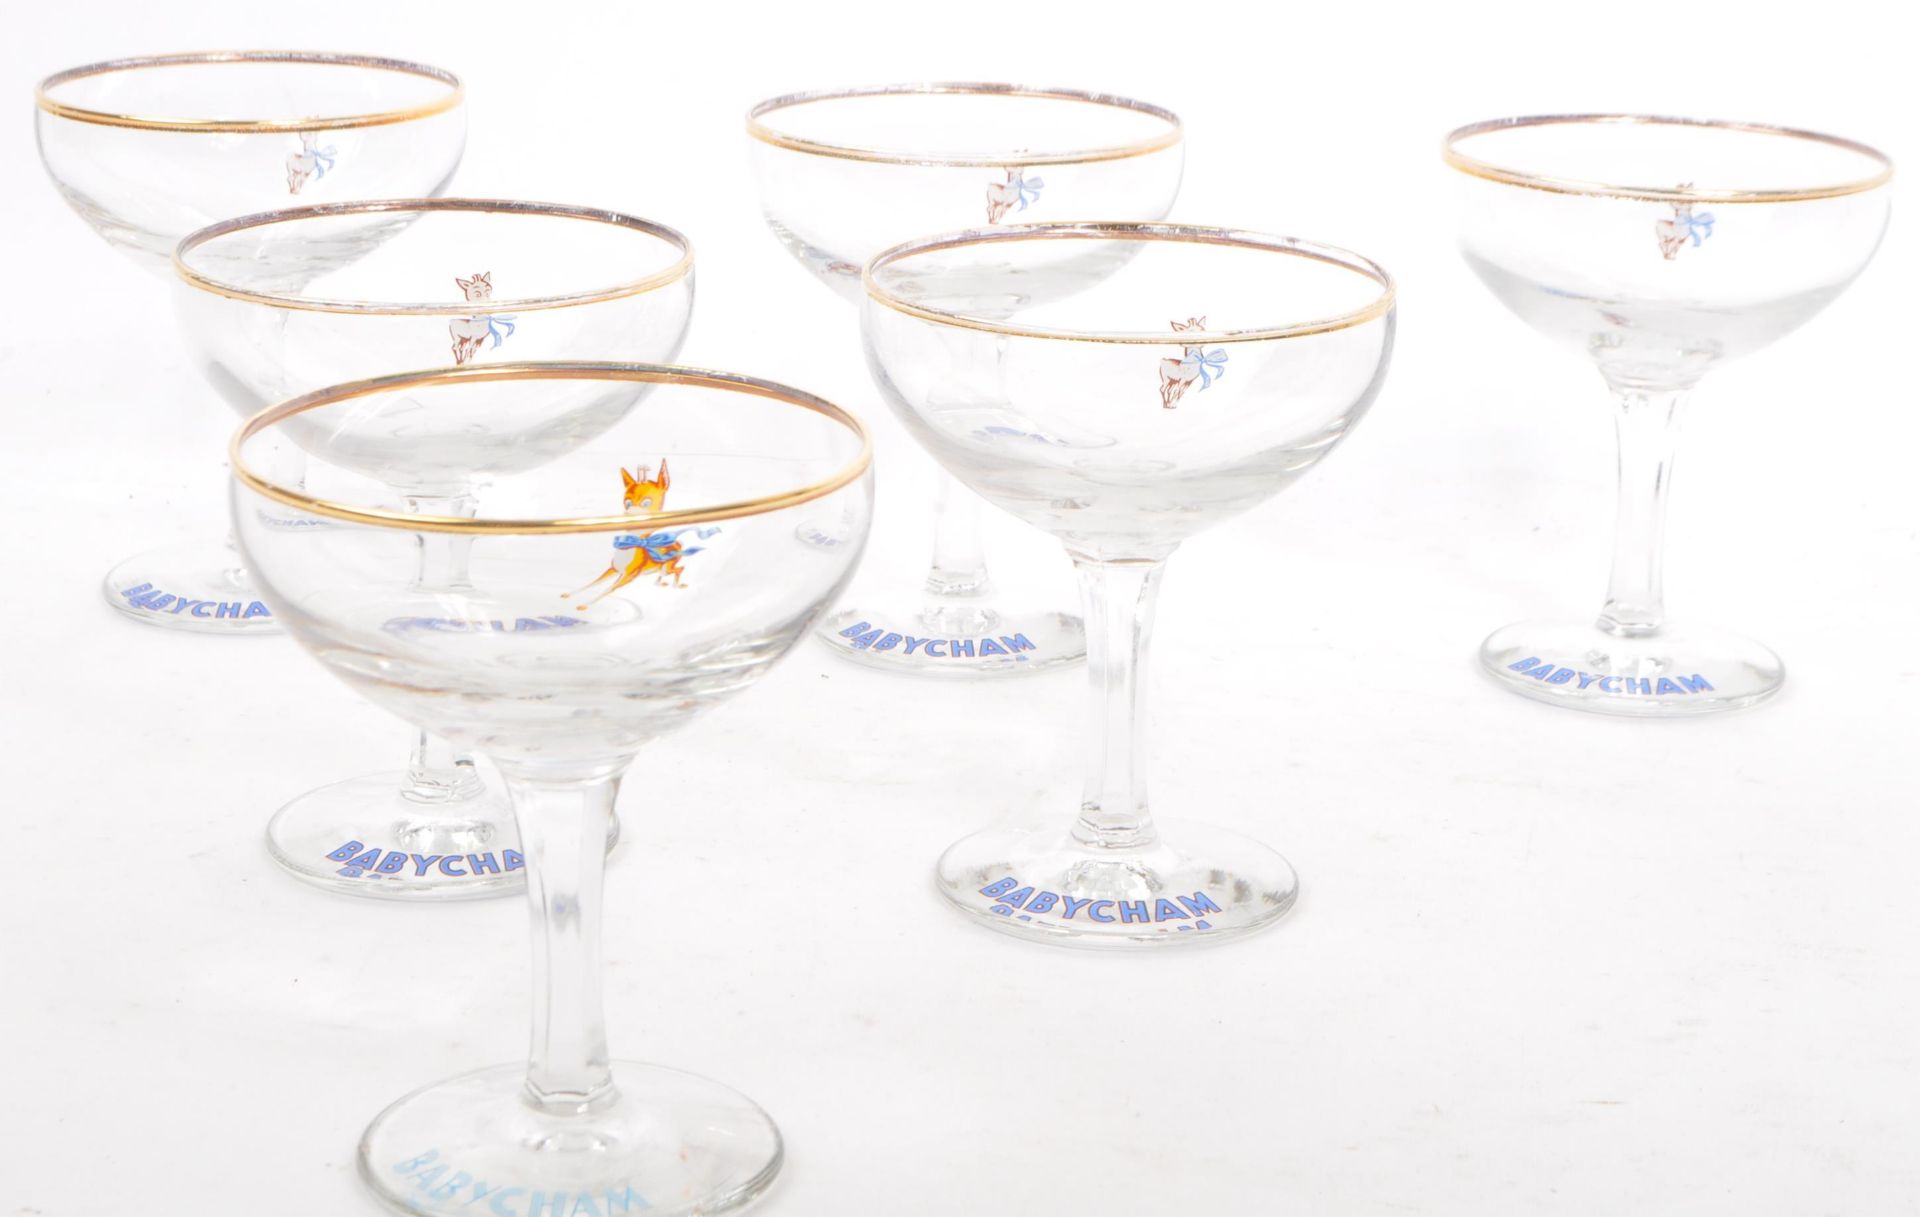 SIX VINTAGE BABYCHAM COCKTAIL COUPE GLASSES - Bild 2 aus 7